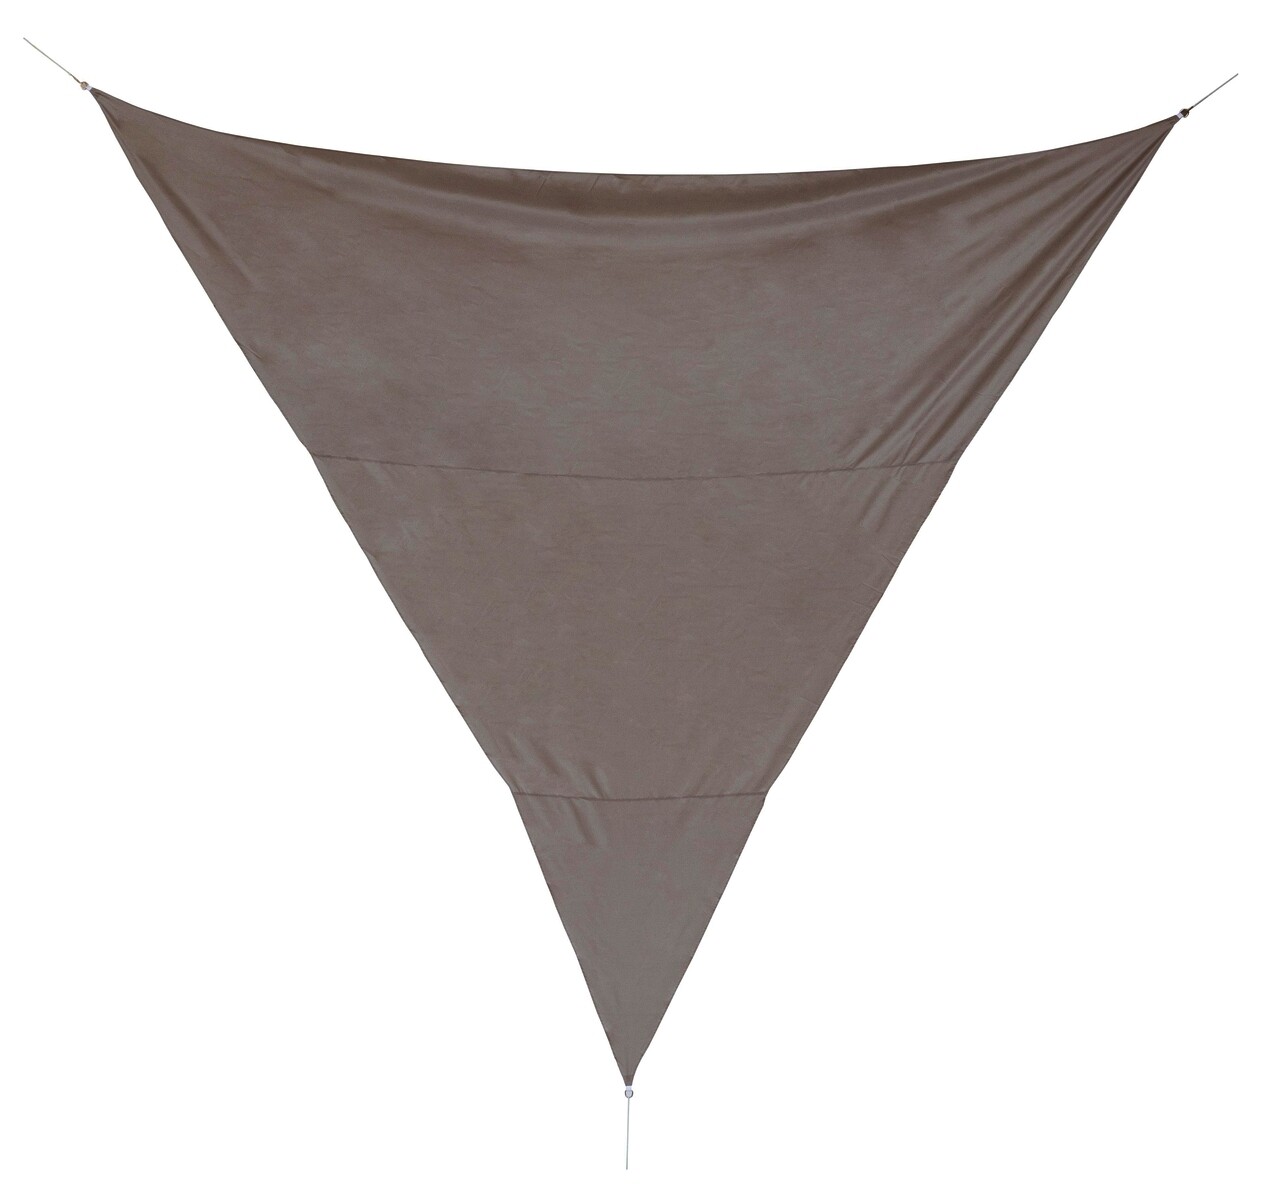 Sunshade Háromszögű napellenző, Bizzotto, 500 x 500 cm, poliészter, grézs